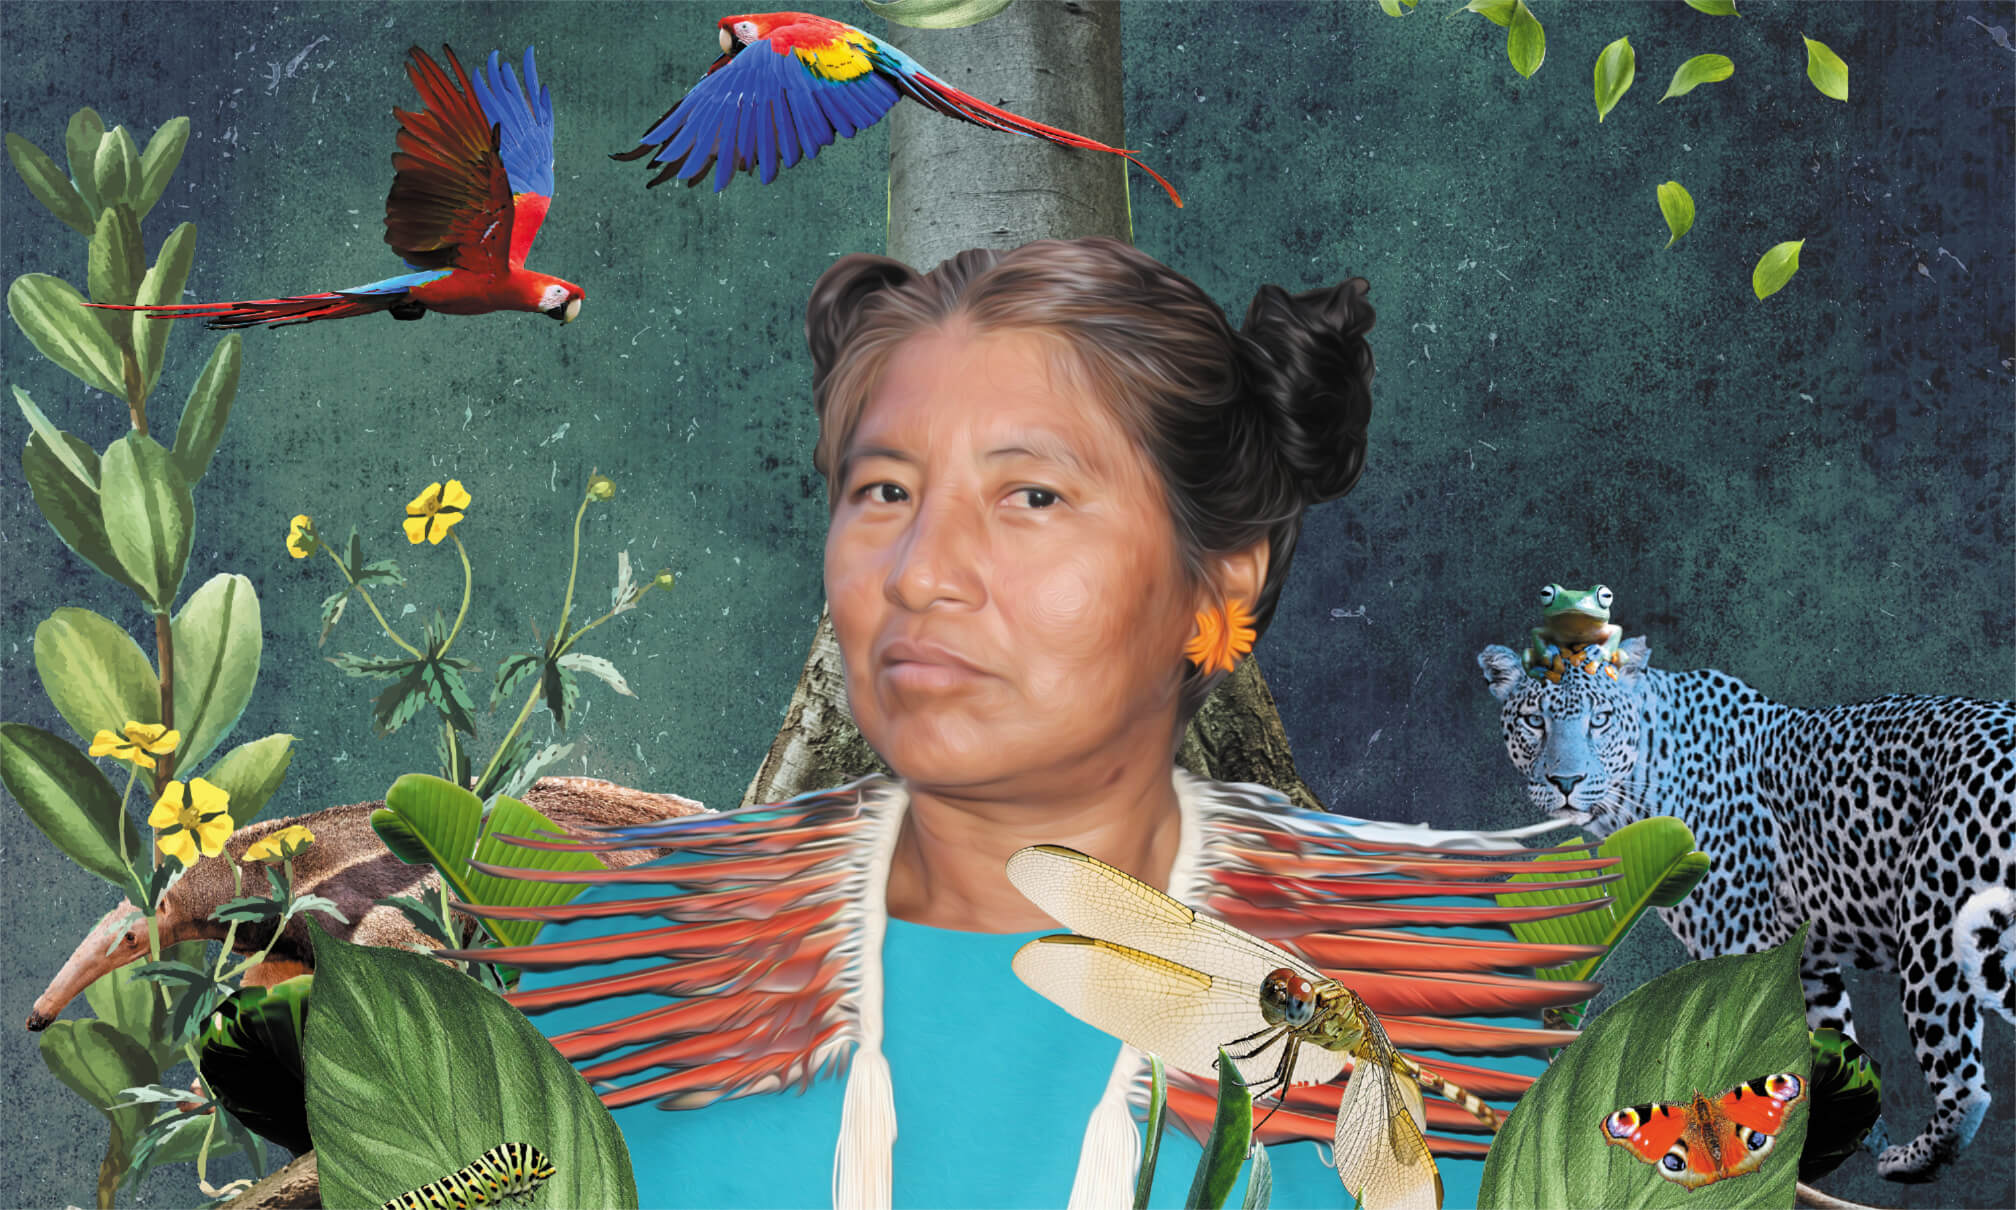 Die Stärke der Frauen und der Natur: Collage mit Foto der indigenen Frau Francenice Batista Farias. Als Inspiration dienten die Frisur der indigenen Hopi Nordamerikas, die mexikanische Revolutionärin Clara de La Rocha sowie die Star Wars-Filmfigur Prinzessin Leia.